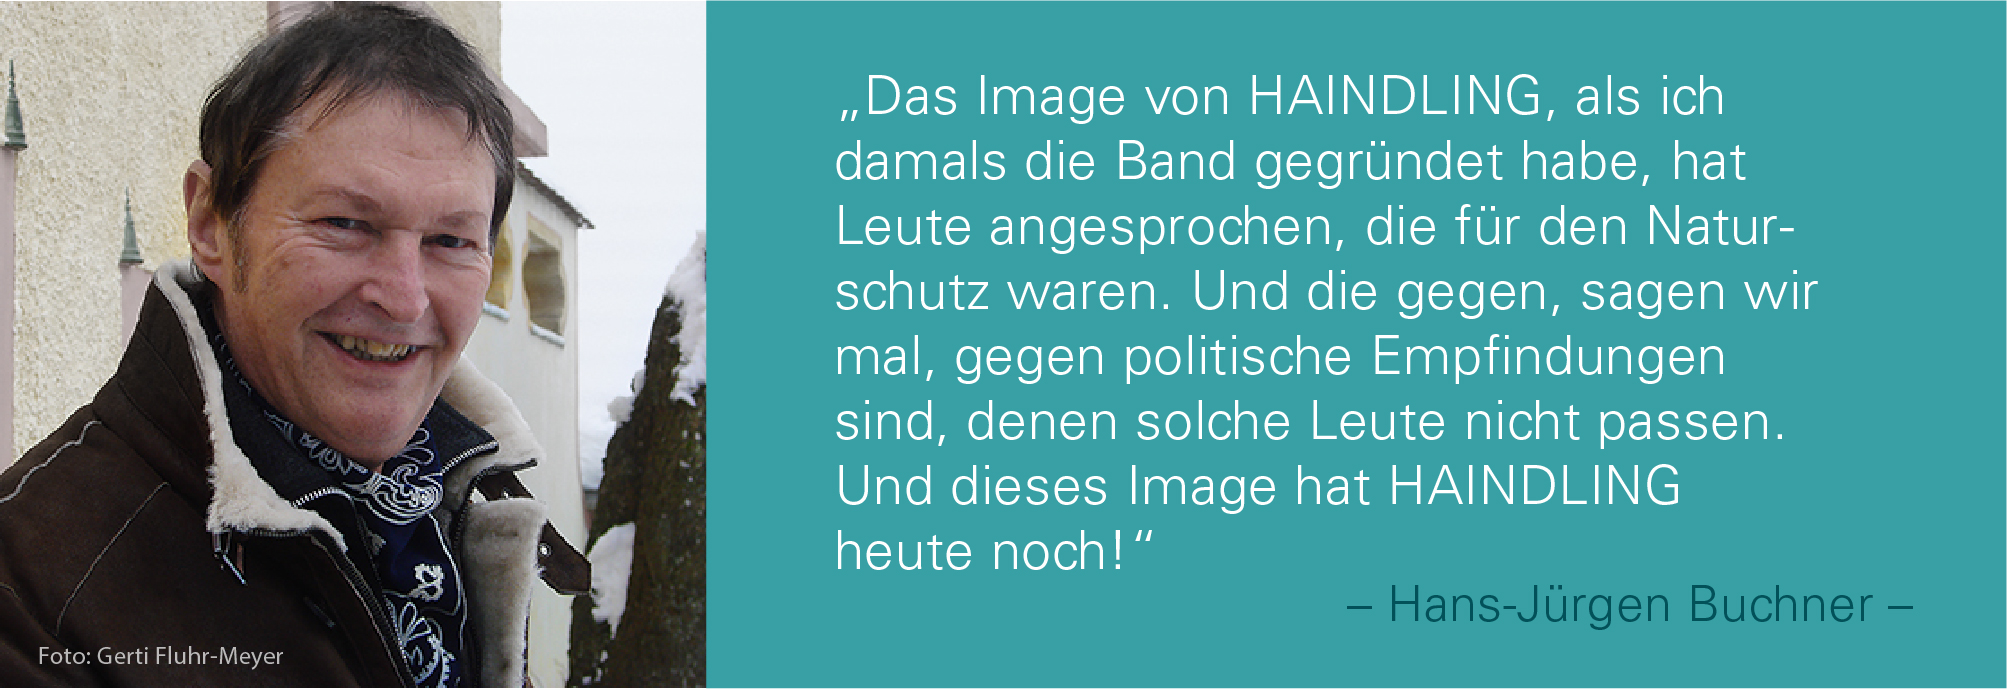  Porträtfoto von Hans-Jürgen Buchner mit dem Zitat: Das Image von HAINDLING, als ich damals die Band gegründet habe, hat Leute angesprochen, die für den Naturschutz waren. Und die gegen, sagen wir mal, gegen politische Empfindungen sind, denen solche Leute nicht passen. Und dieses Image hat HAINDLING heute noch.